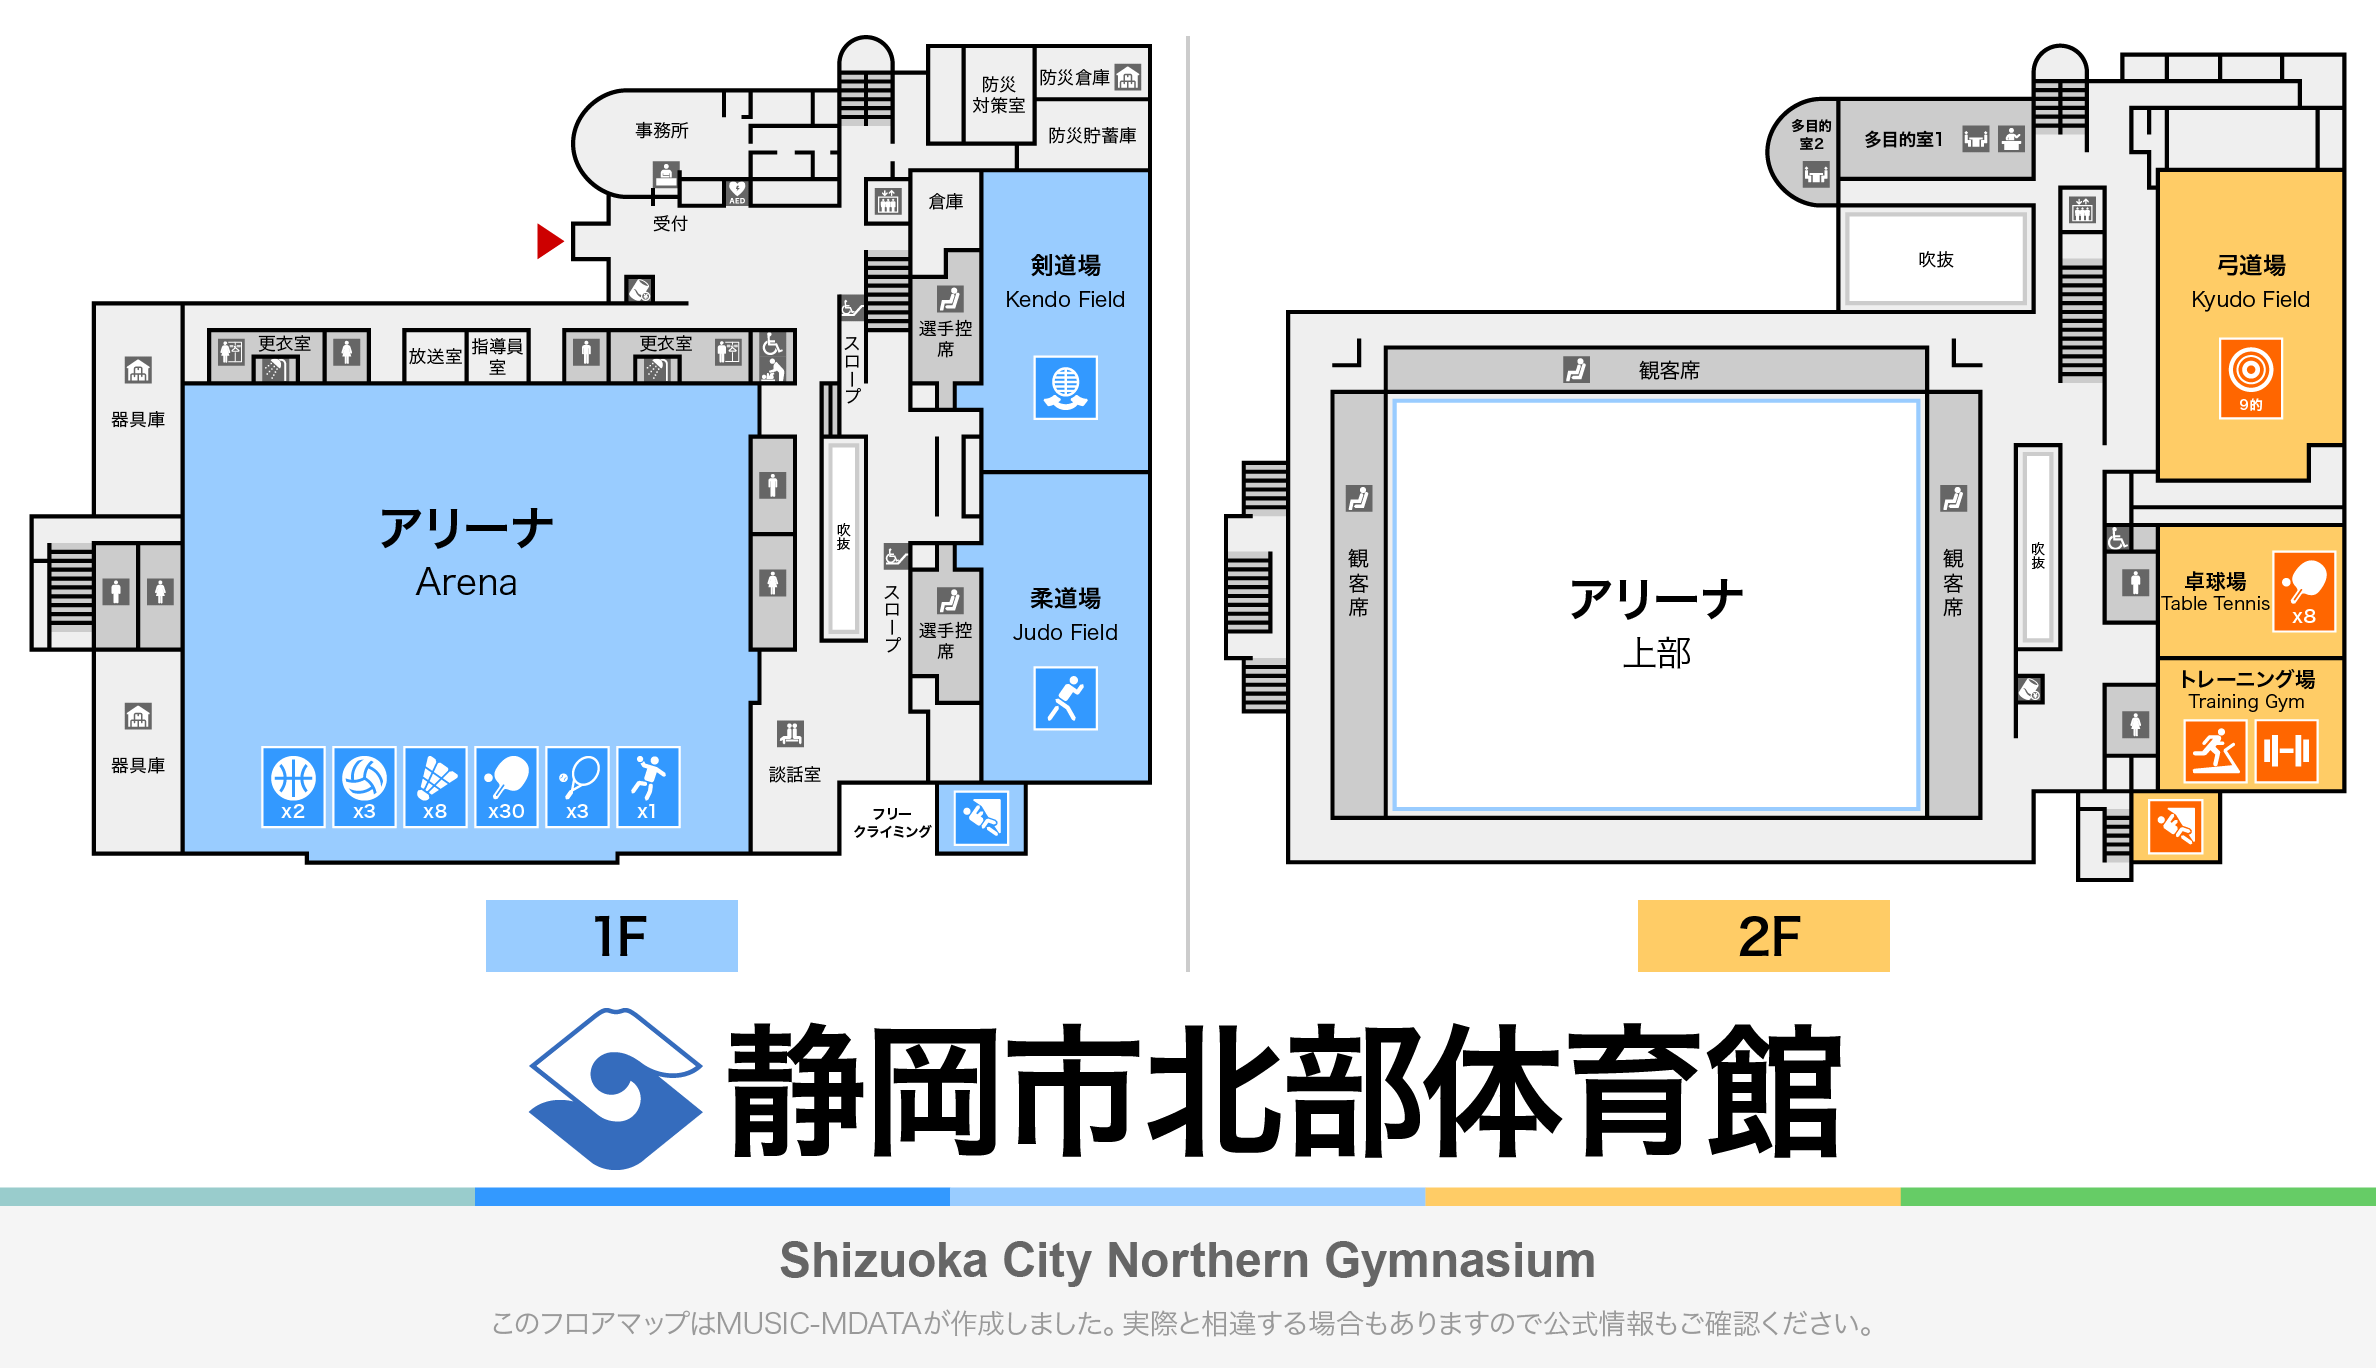 静岡市北部体育館のフロアマップ・体育館